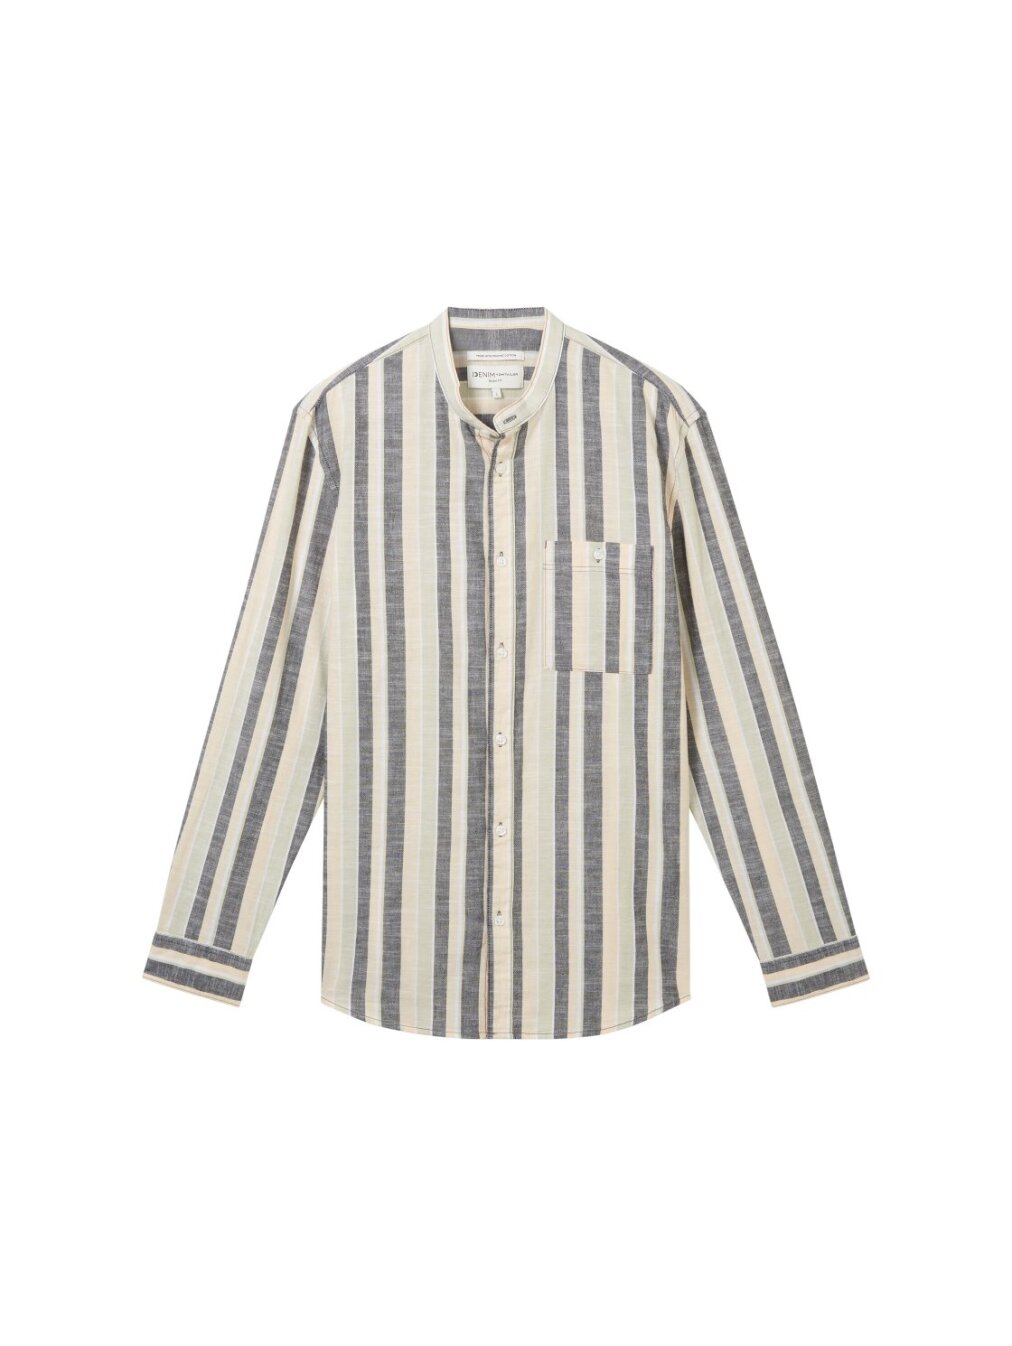 striped slubyarn shirt